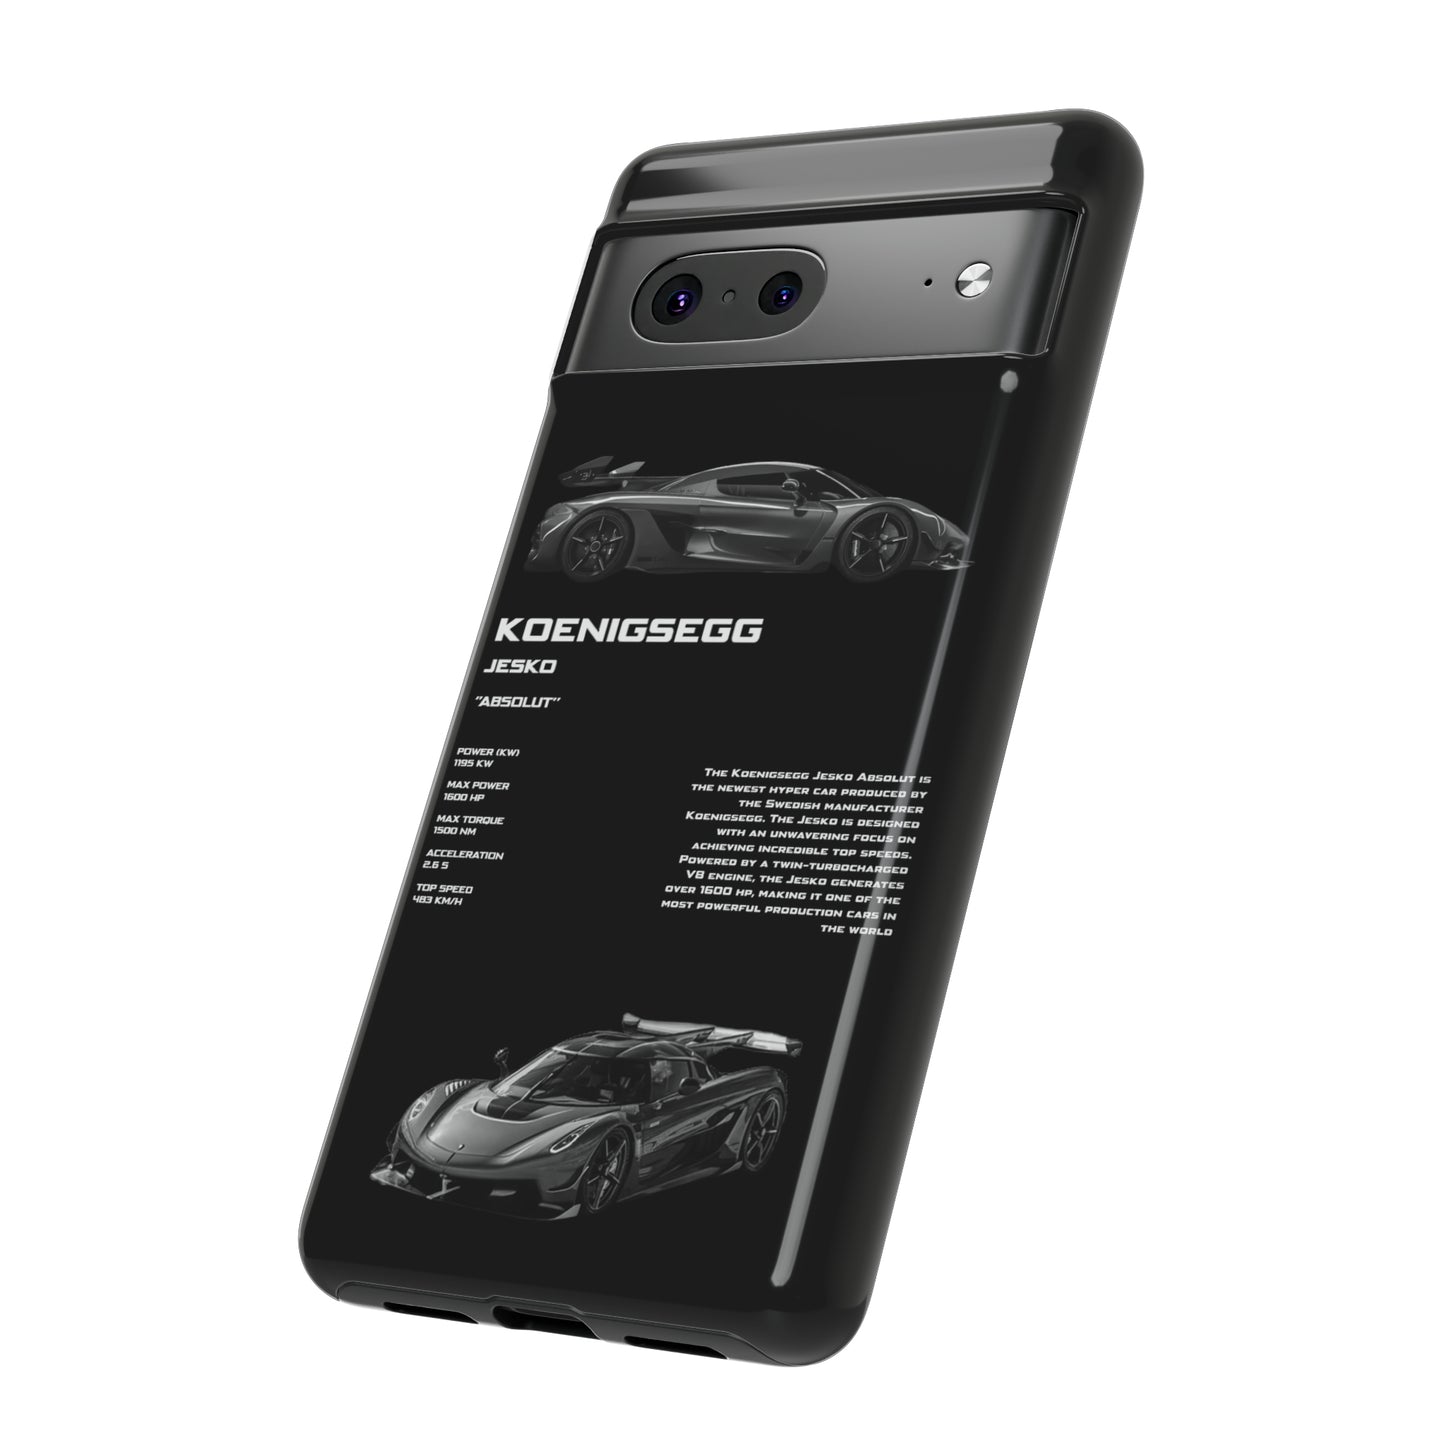 Koenigsegg Jesko Black (Samsung)